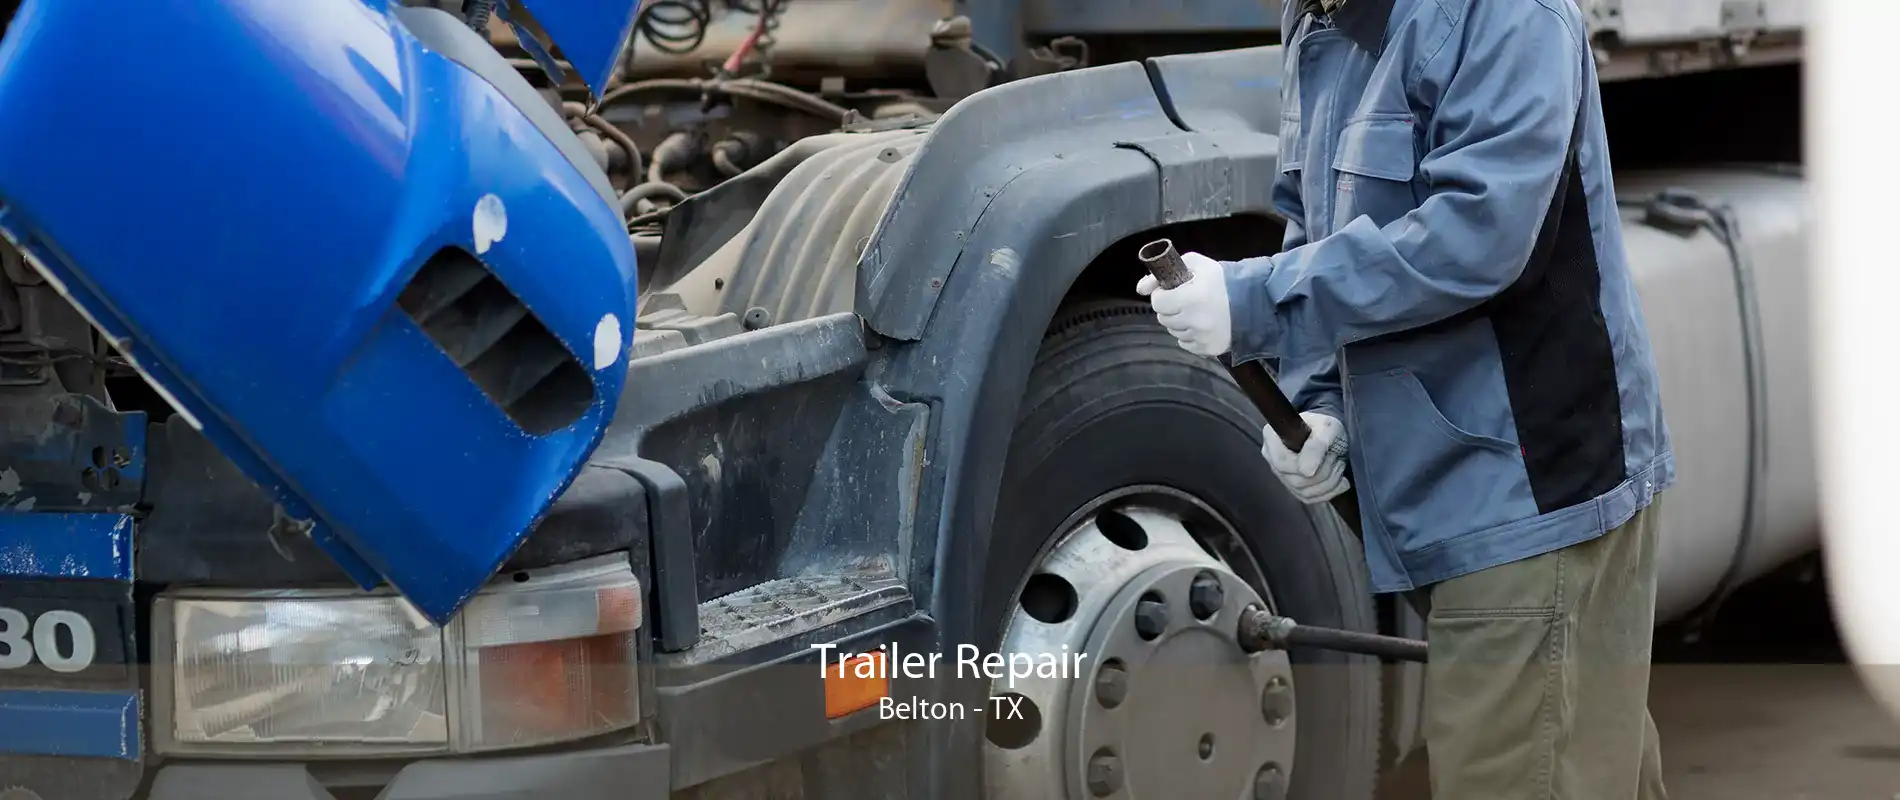 Trailer Repair Belton - TX